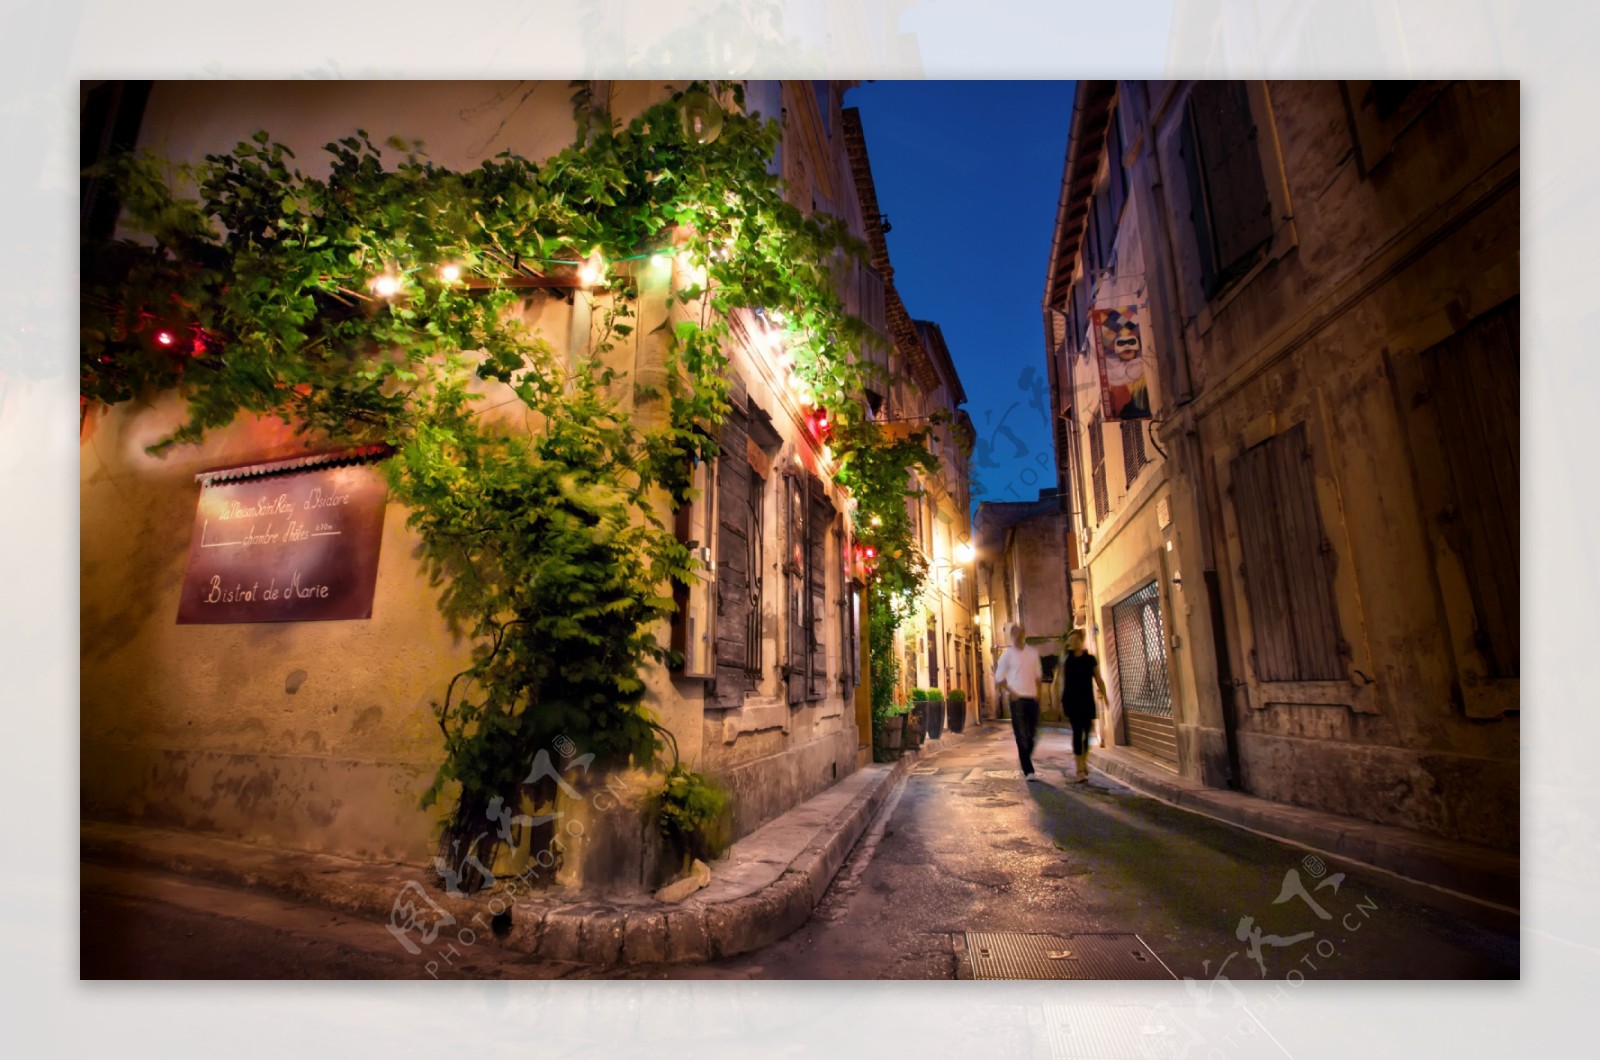 法国圣雷米普罗旺斯夜间街道图片